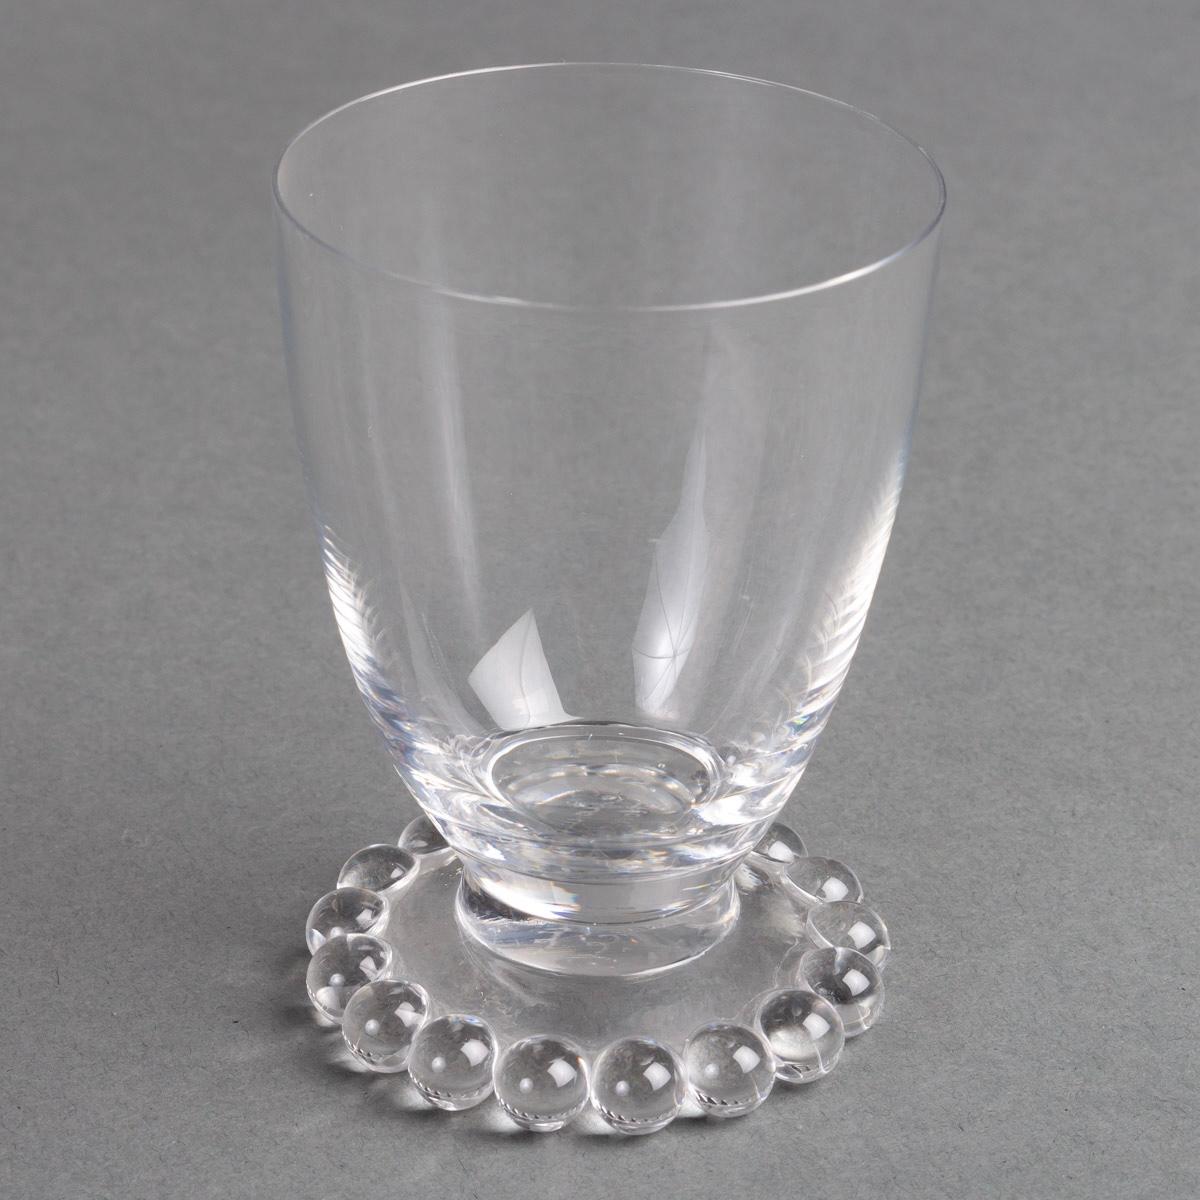 Mid-20th Century 1935 René Lalique, Tablewares Glasses Decanters Boules Glass, 34 Pieces For Sale